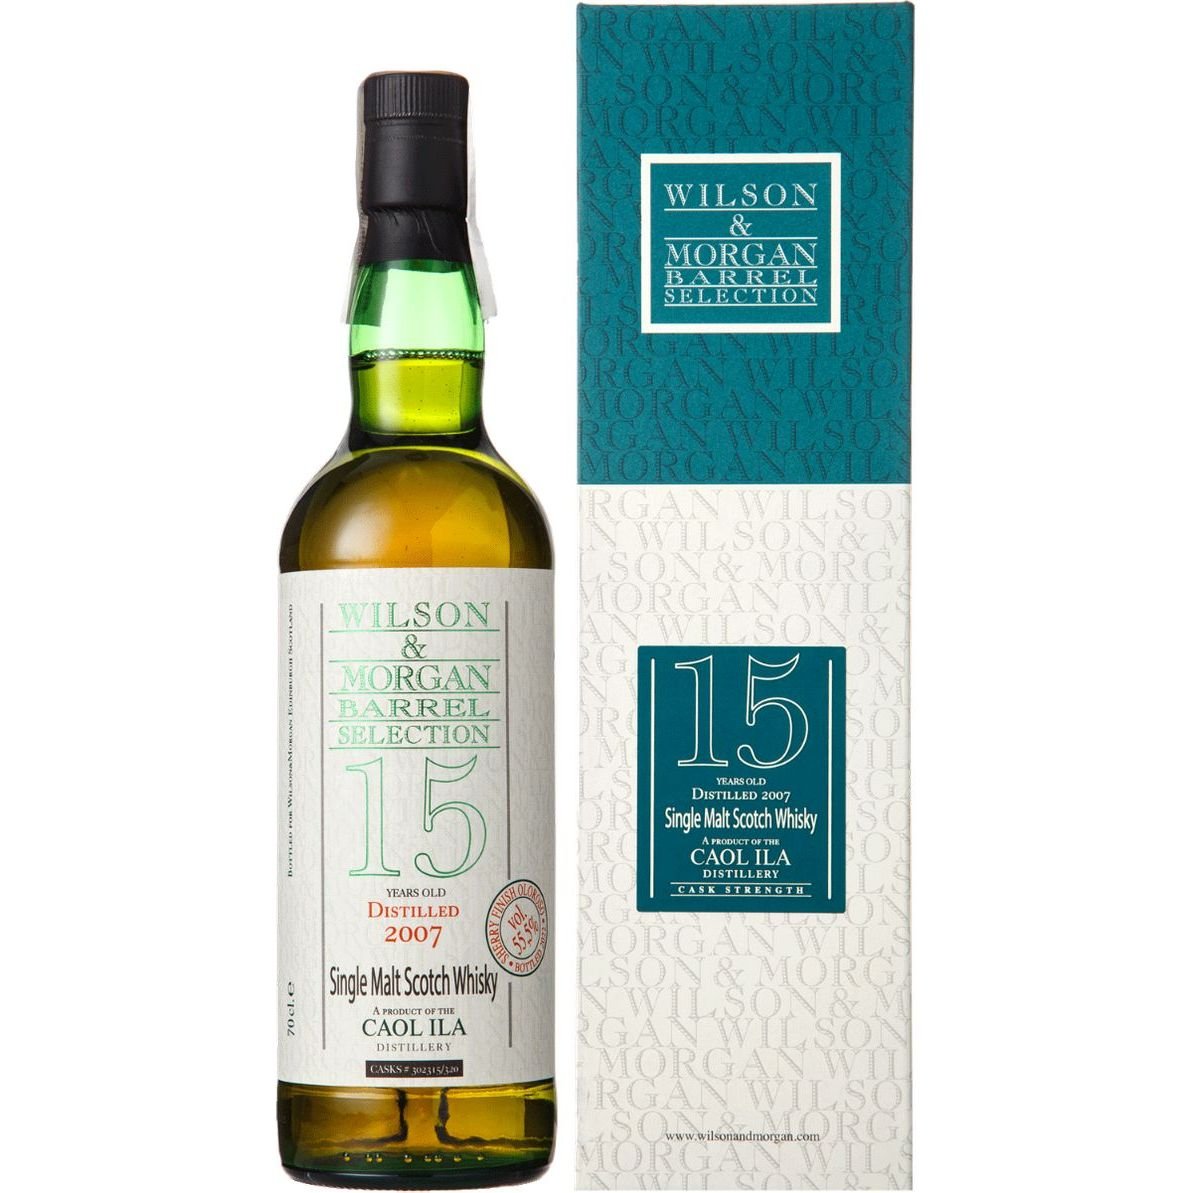 Віскі Wilson & Morgan Caol Ila 15 yo Oloroso Finish Cask #302315-320 Single Malt Scotch Whisky 55.5% 0.7 л у подарунковій упаковці - фото 1